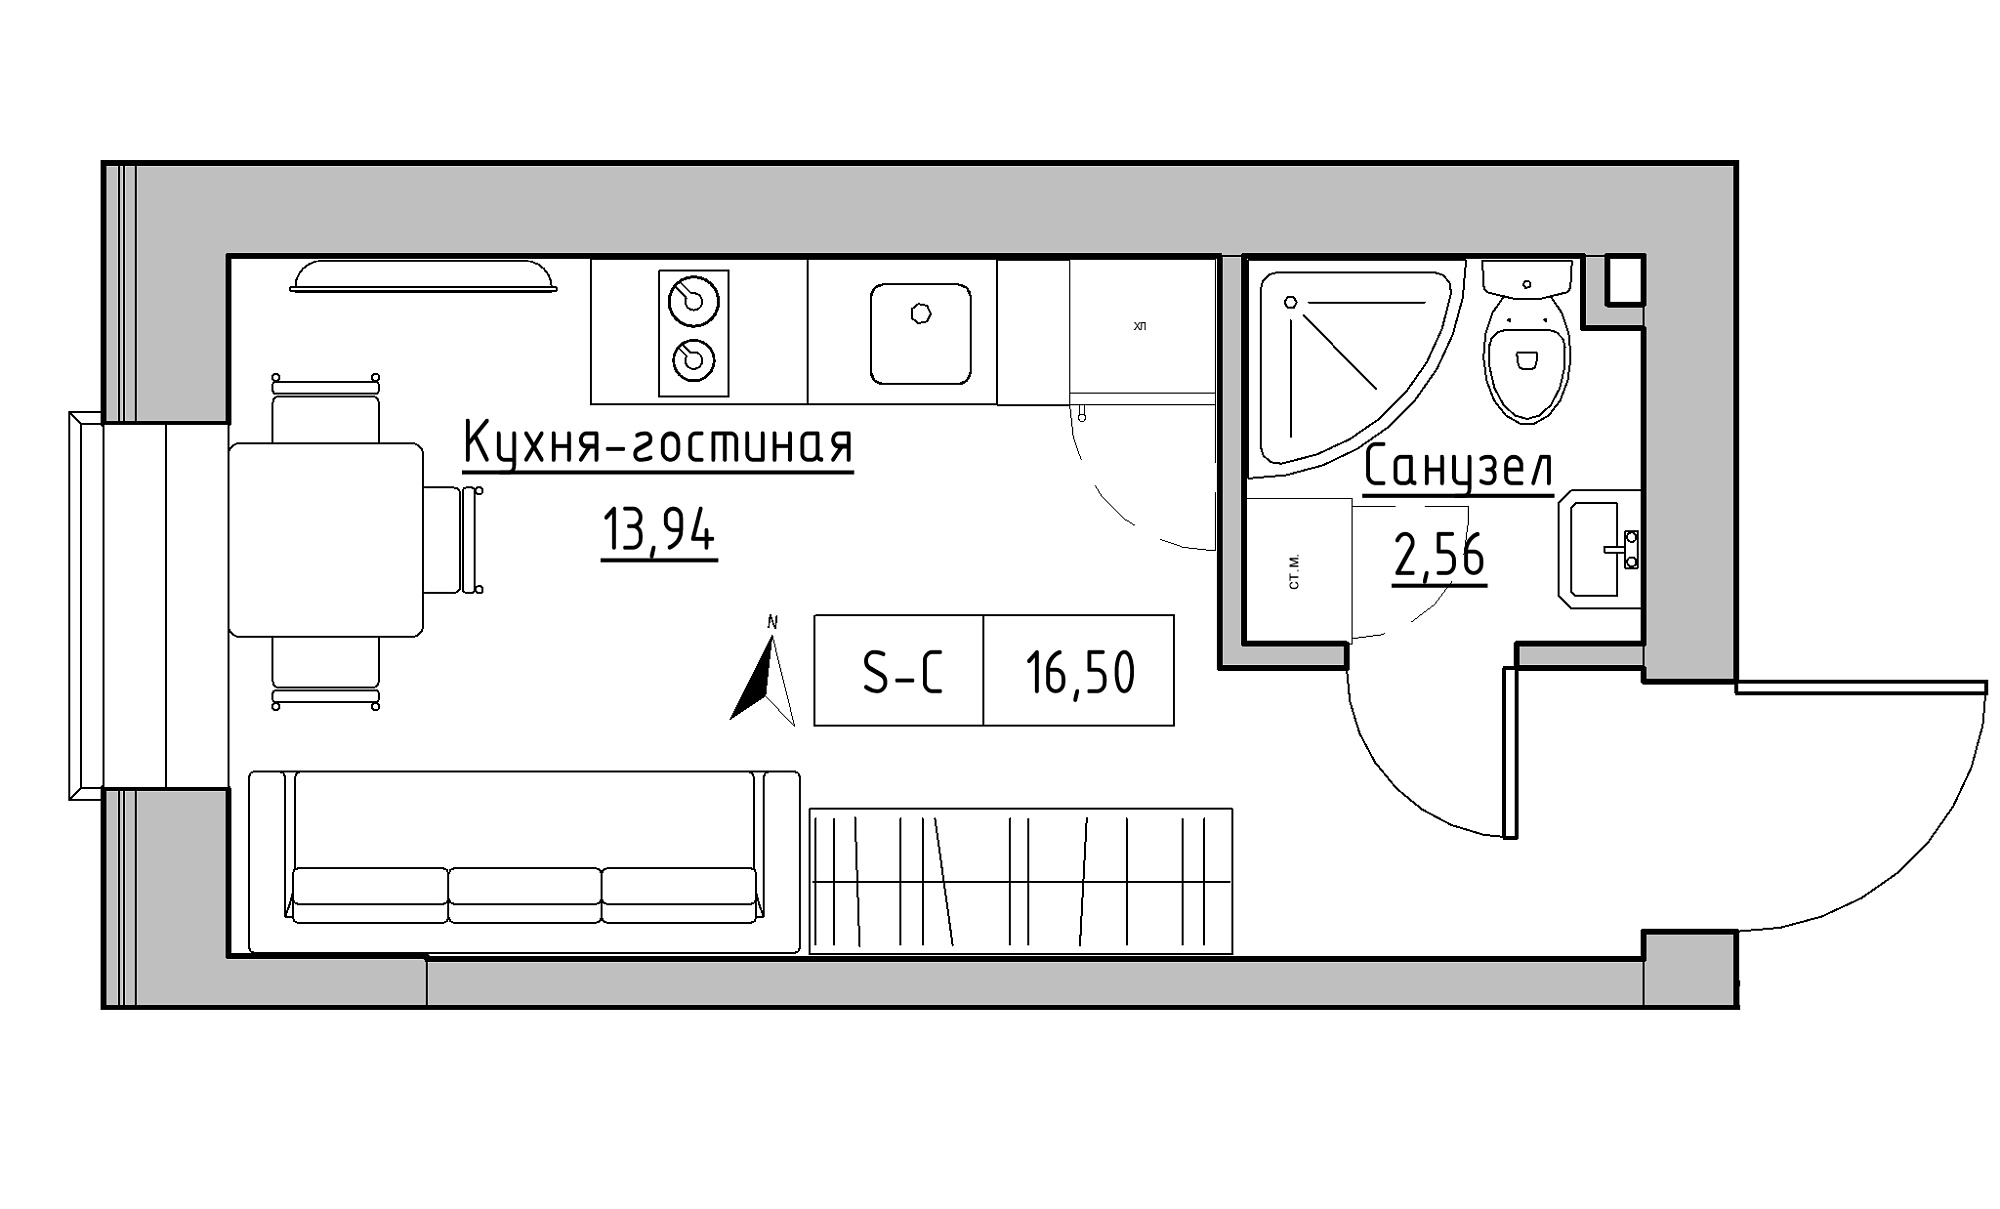 Планування Smart-квартира площею 16.5м2, KS-016-03/0011.